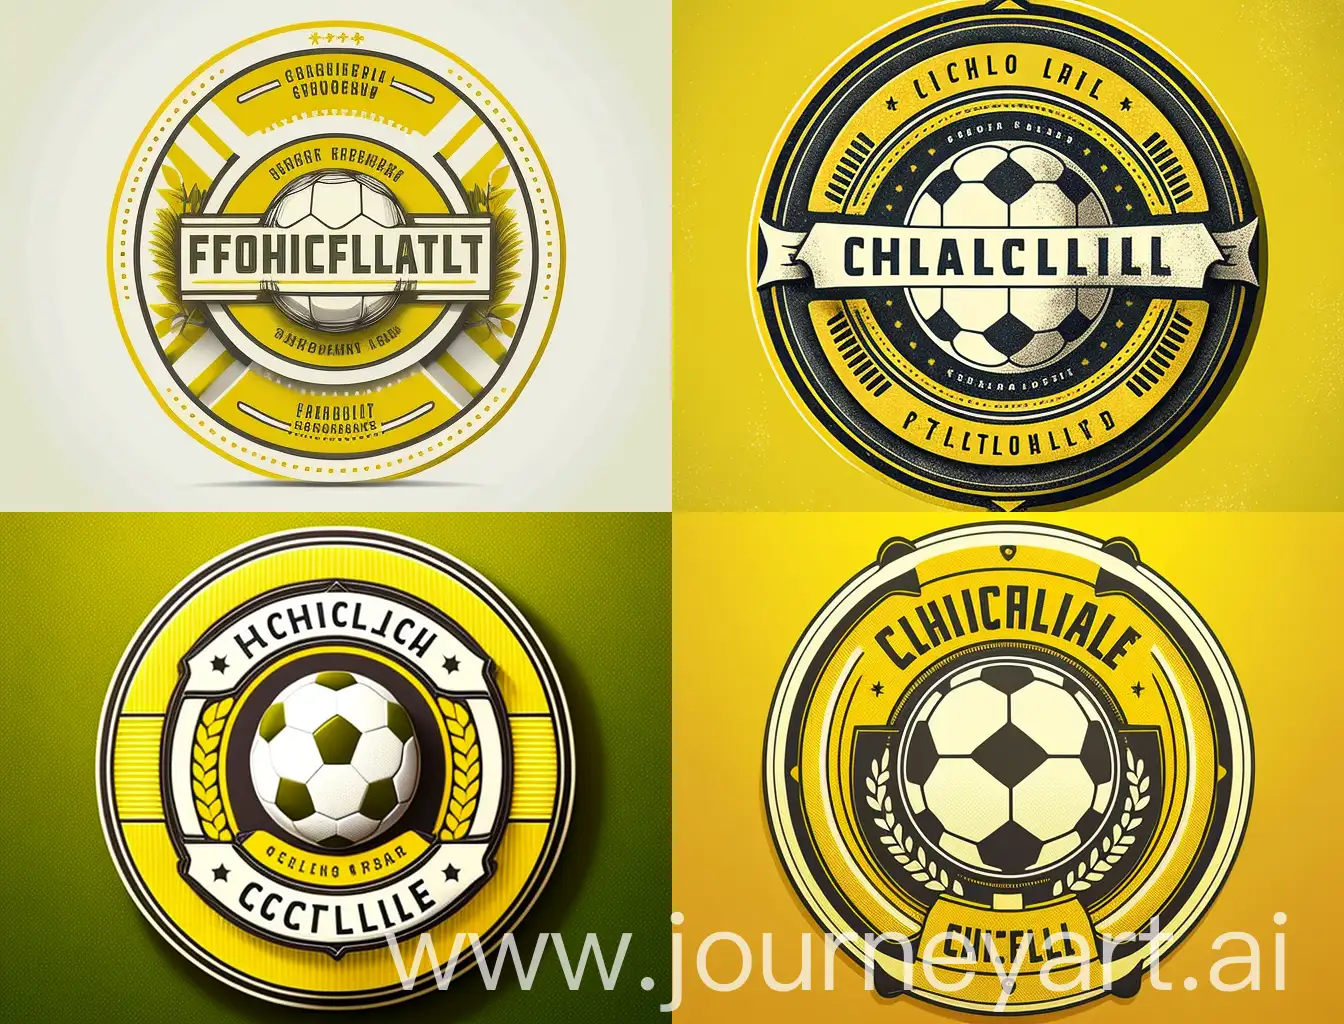 Escudo de fútbol ficticio estilo circular con colores amarillo y blanco como predominantes.